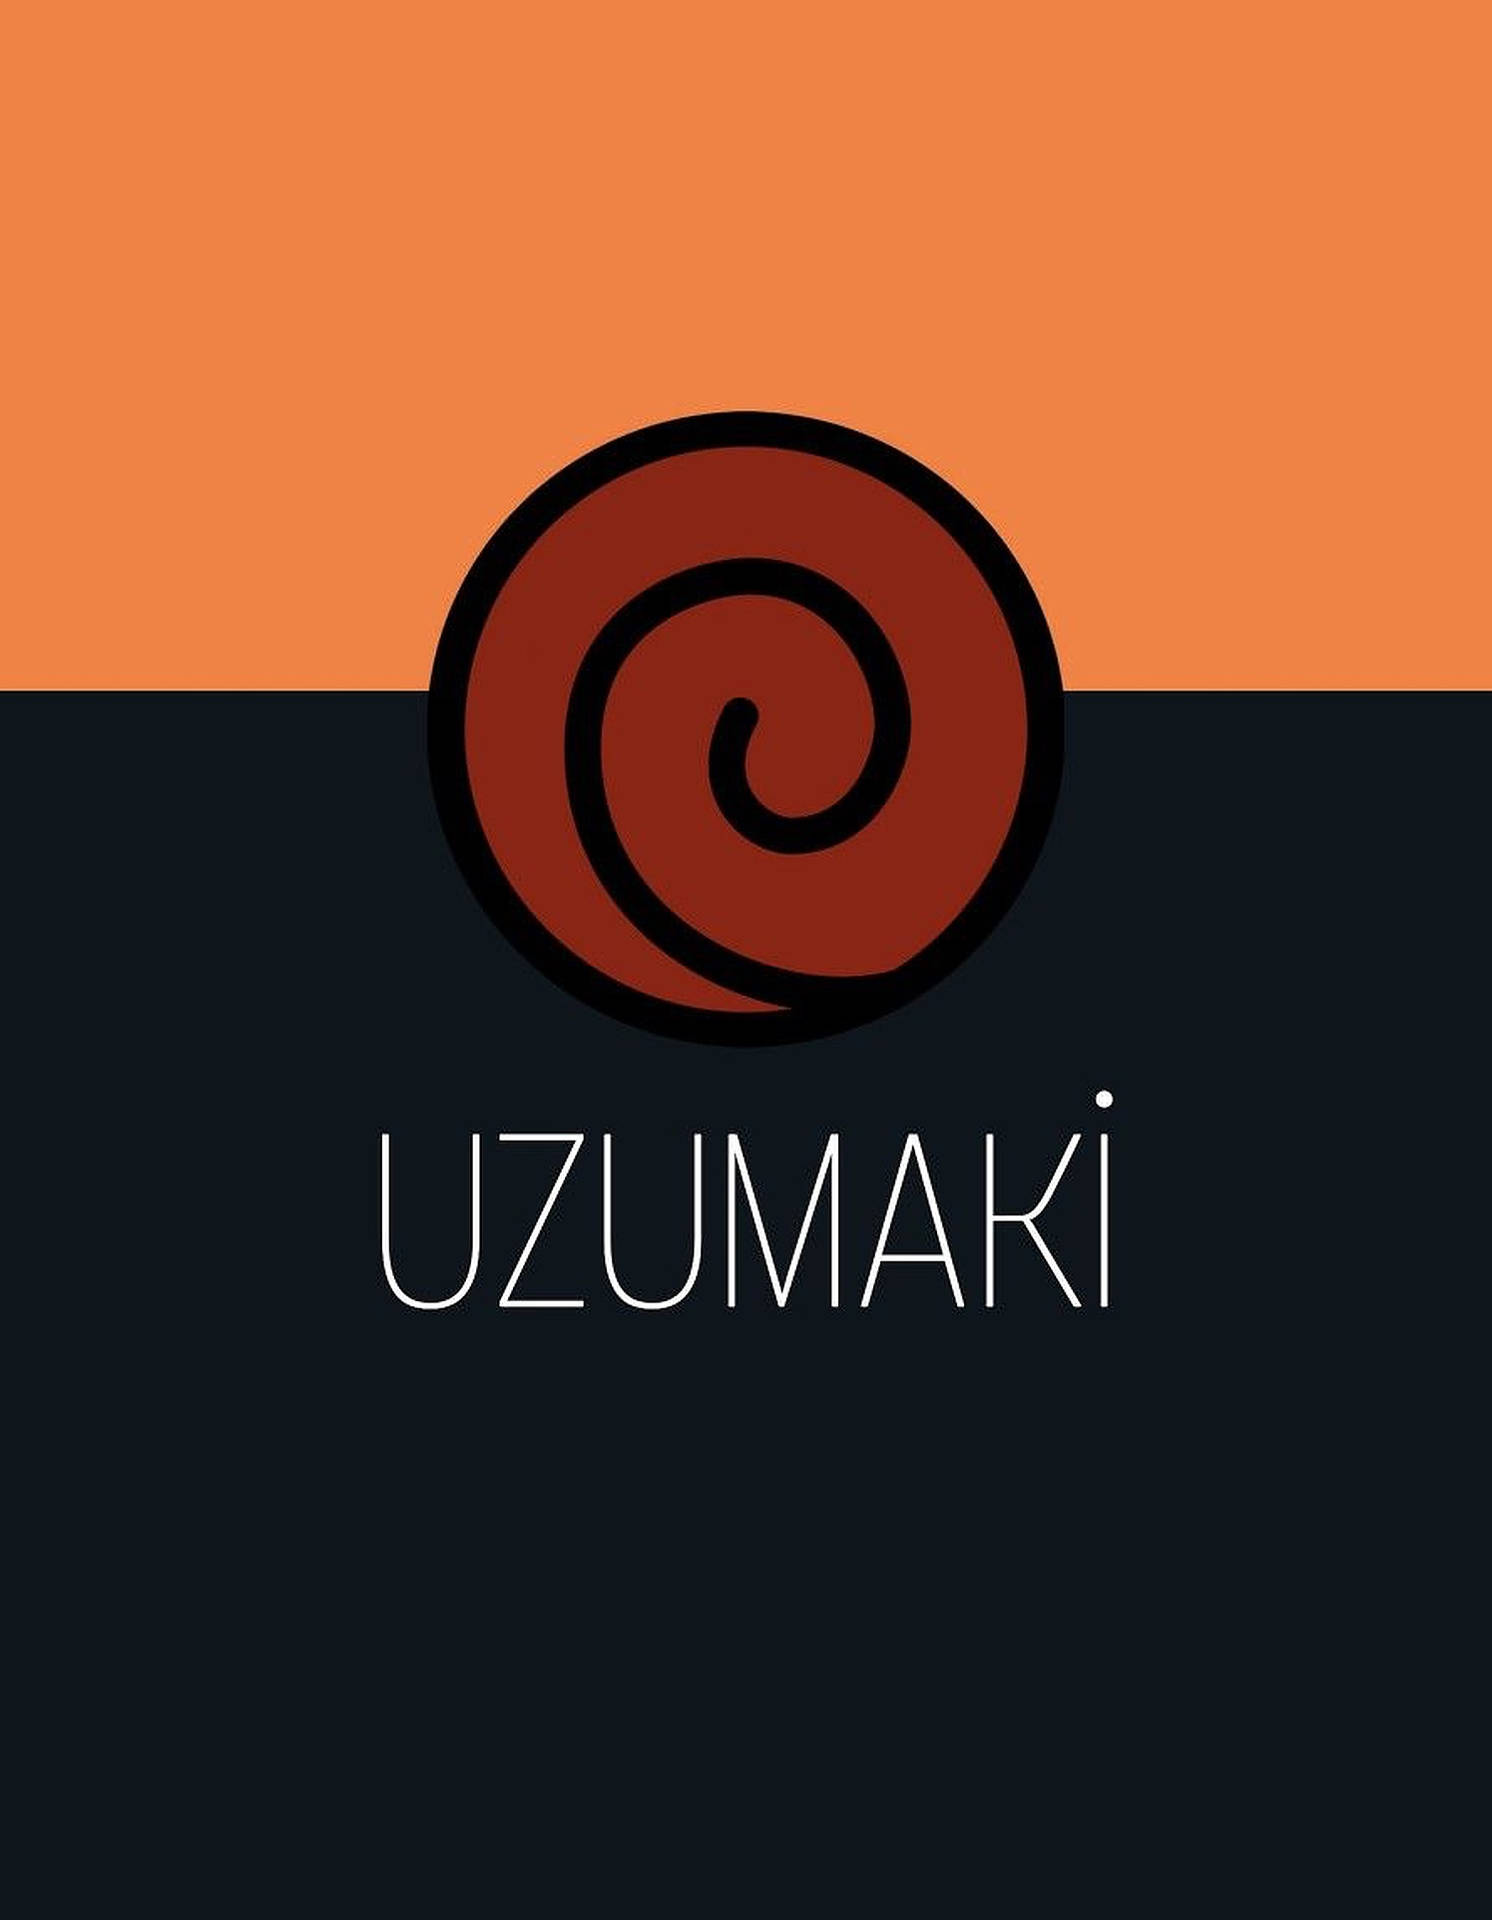 Cool Uzumaki Clan Logo Wallpaper